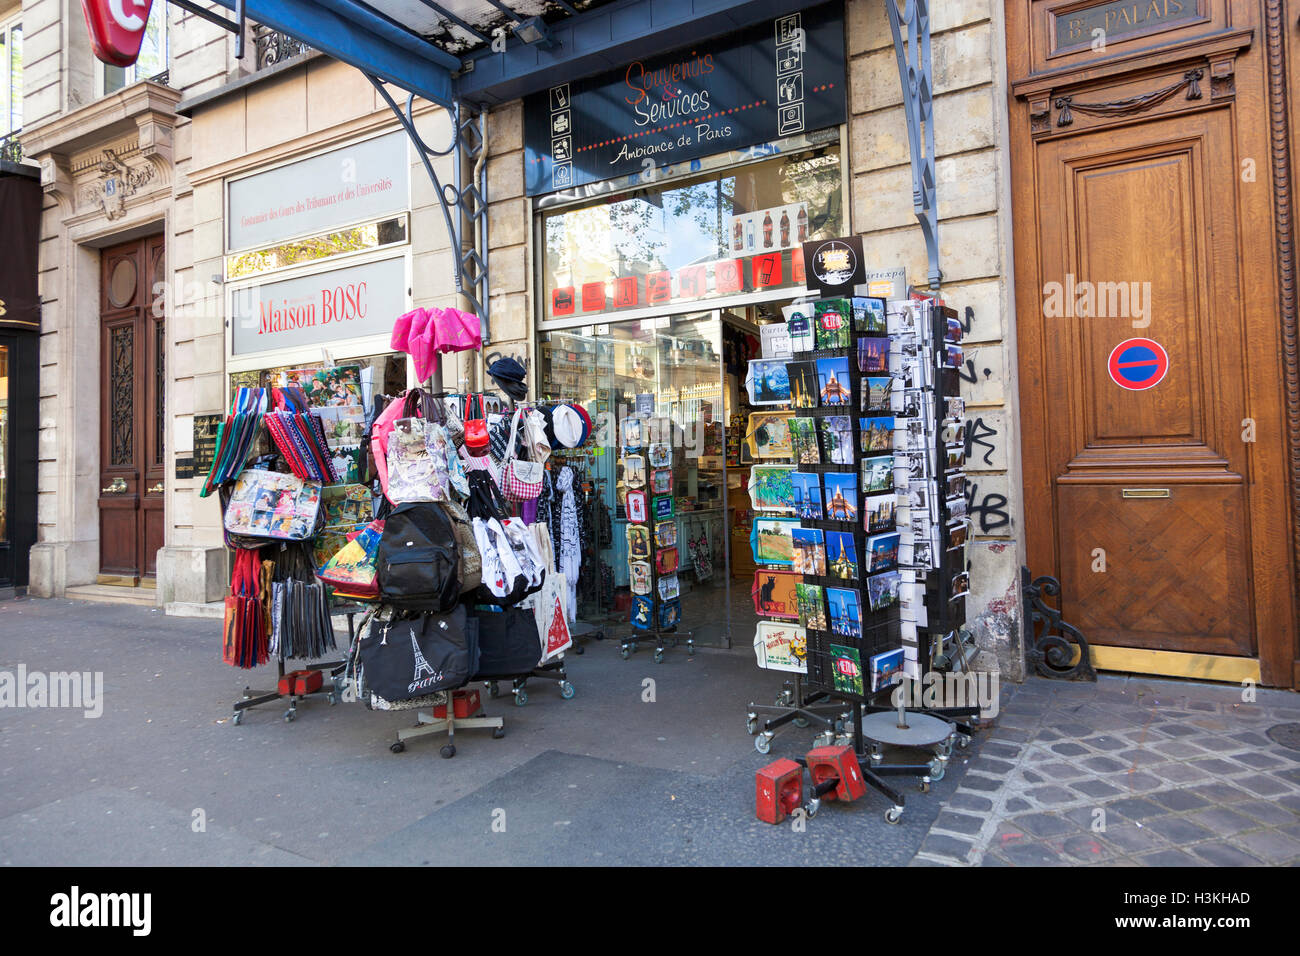 A souvenir shop in Paris, France Stock Photo